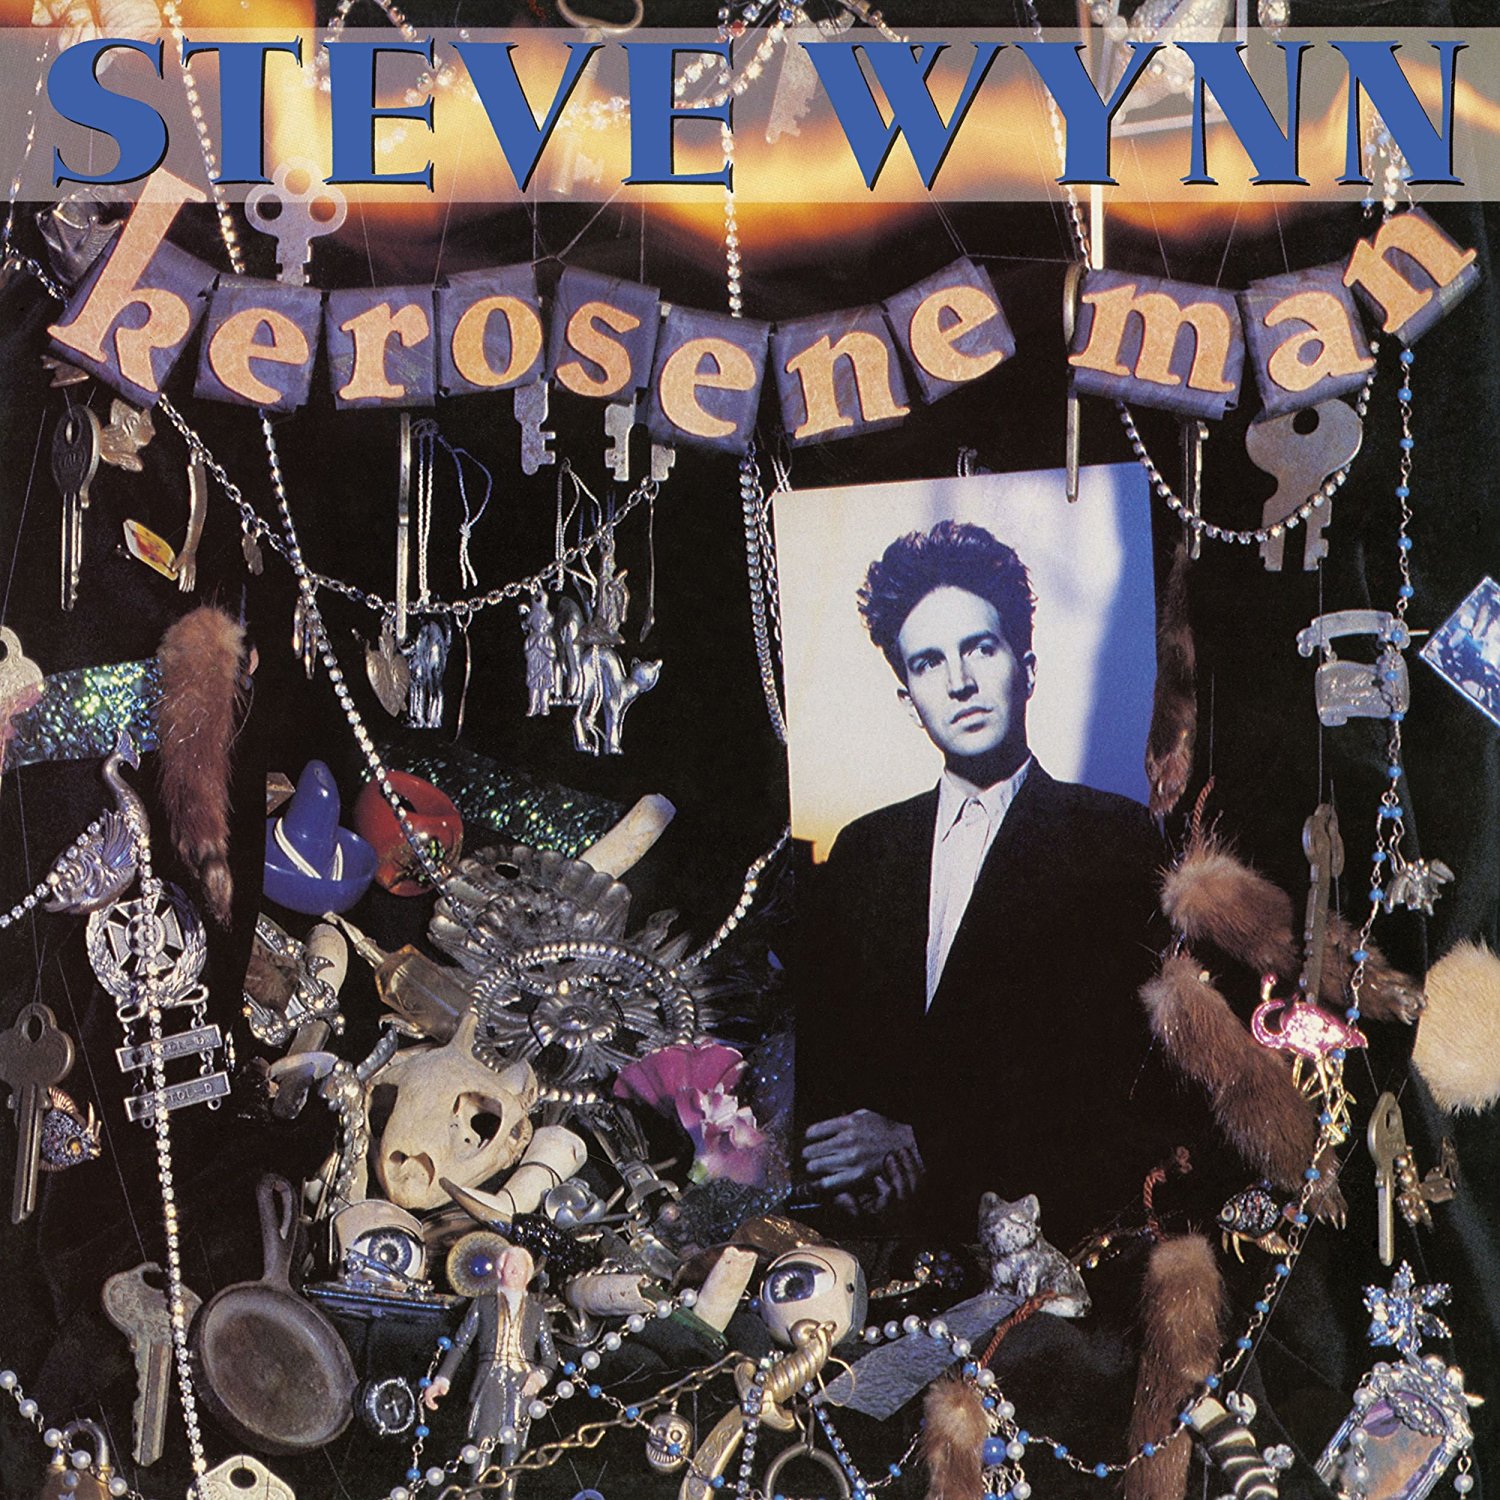 Kerosene Man by Steve Wynn